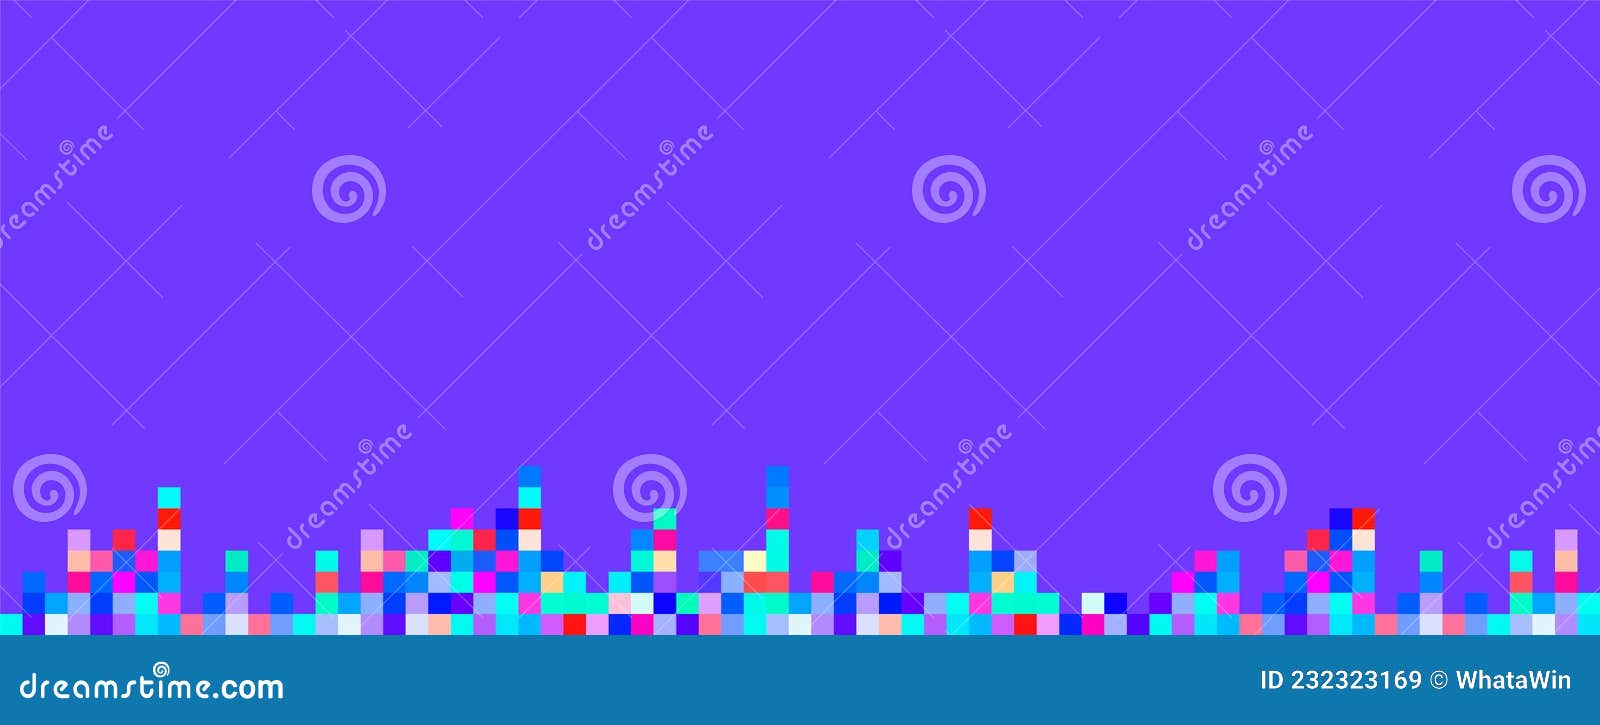 Phông nền Pixel Art 8 bit màu tím là sự lựa chọn tuyệt vời cho những ai yêu thích nghệ thuật 8 bit. Với cảm giác vintage nhưng vẫn rất hiện đại, các họa tiết pixel tím sẽ mang đến một không gian làm việc sáng tạo và độc đáo cho bạn.